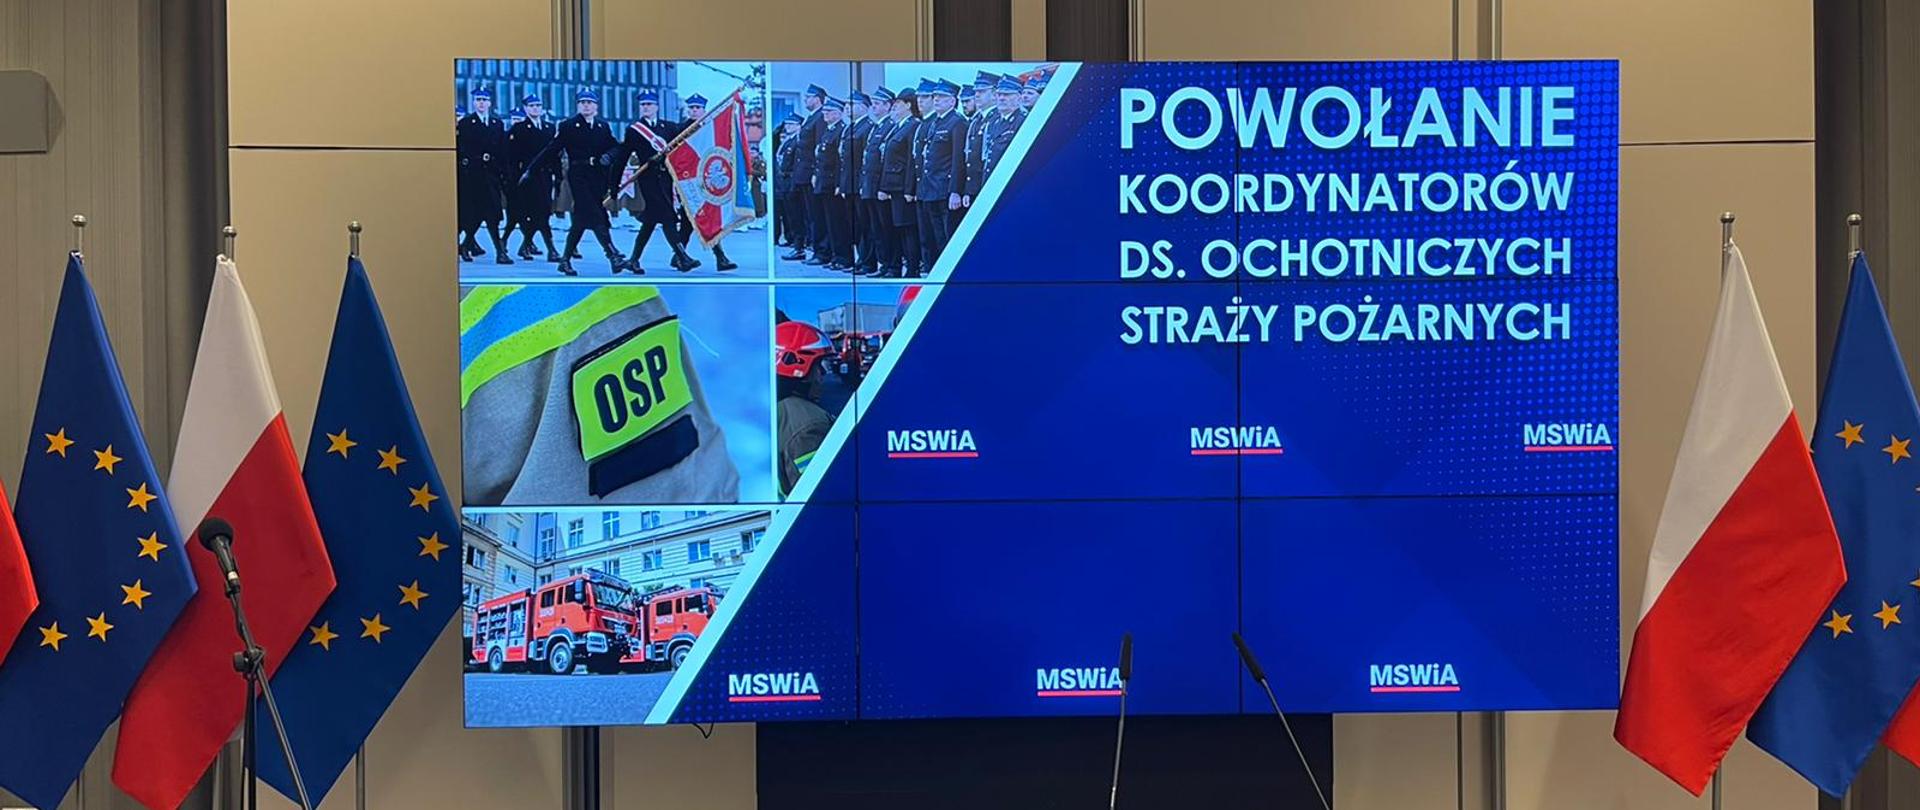 Na telebimie wyświetlany jest napis powołanie koordynatorów do spraw ochotniczych straży pożarnych obok stoją flagi Unii Europejskiej oraz Polski.